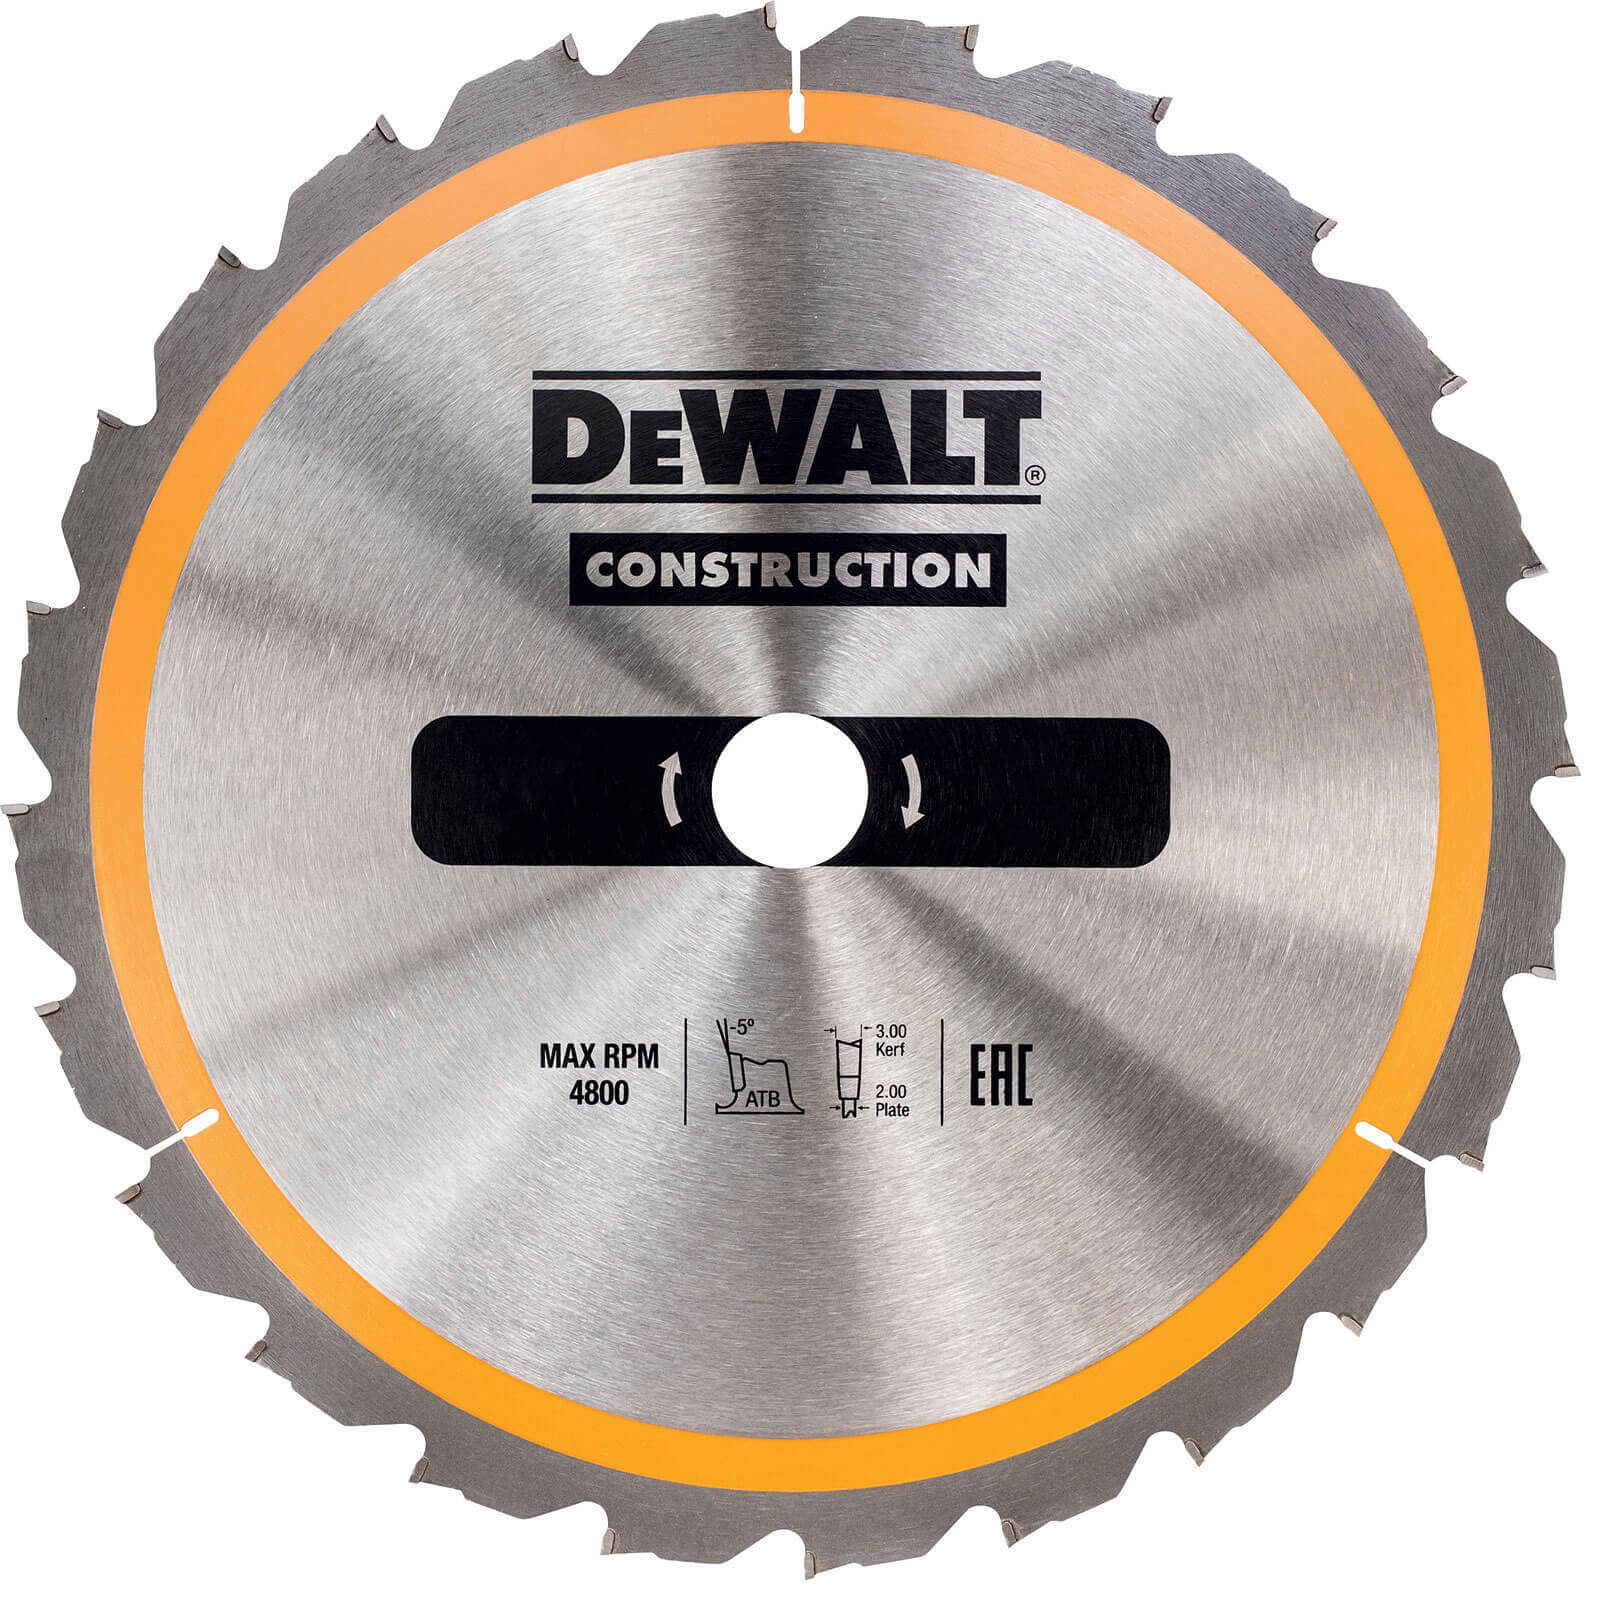 Photo of Dewalt Construction Circular Saw Blade 184mm 18t 30mm